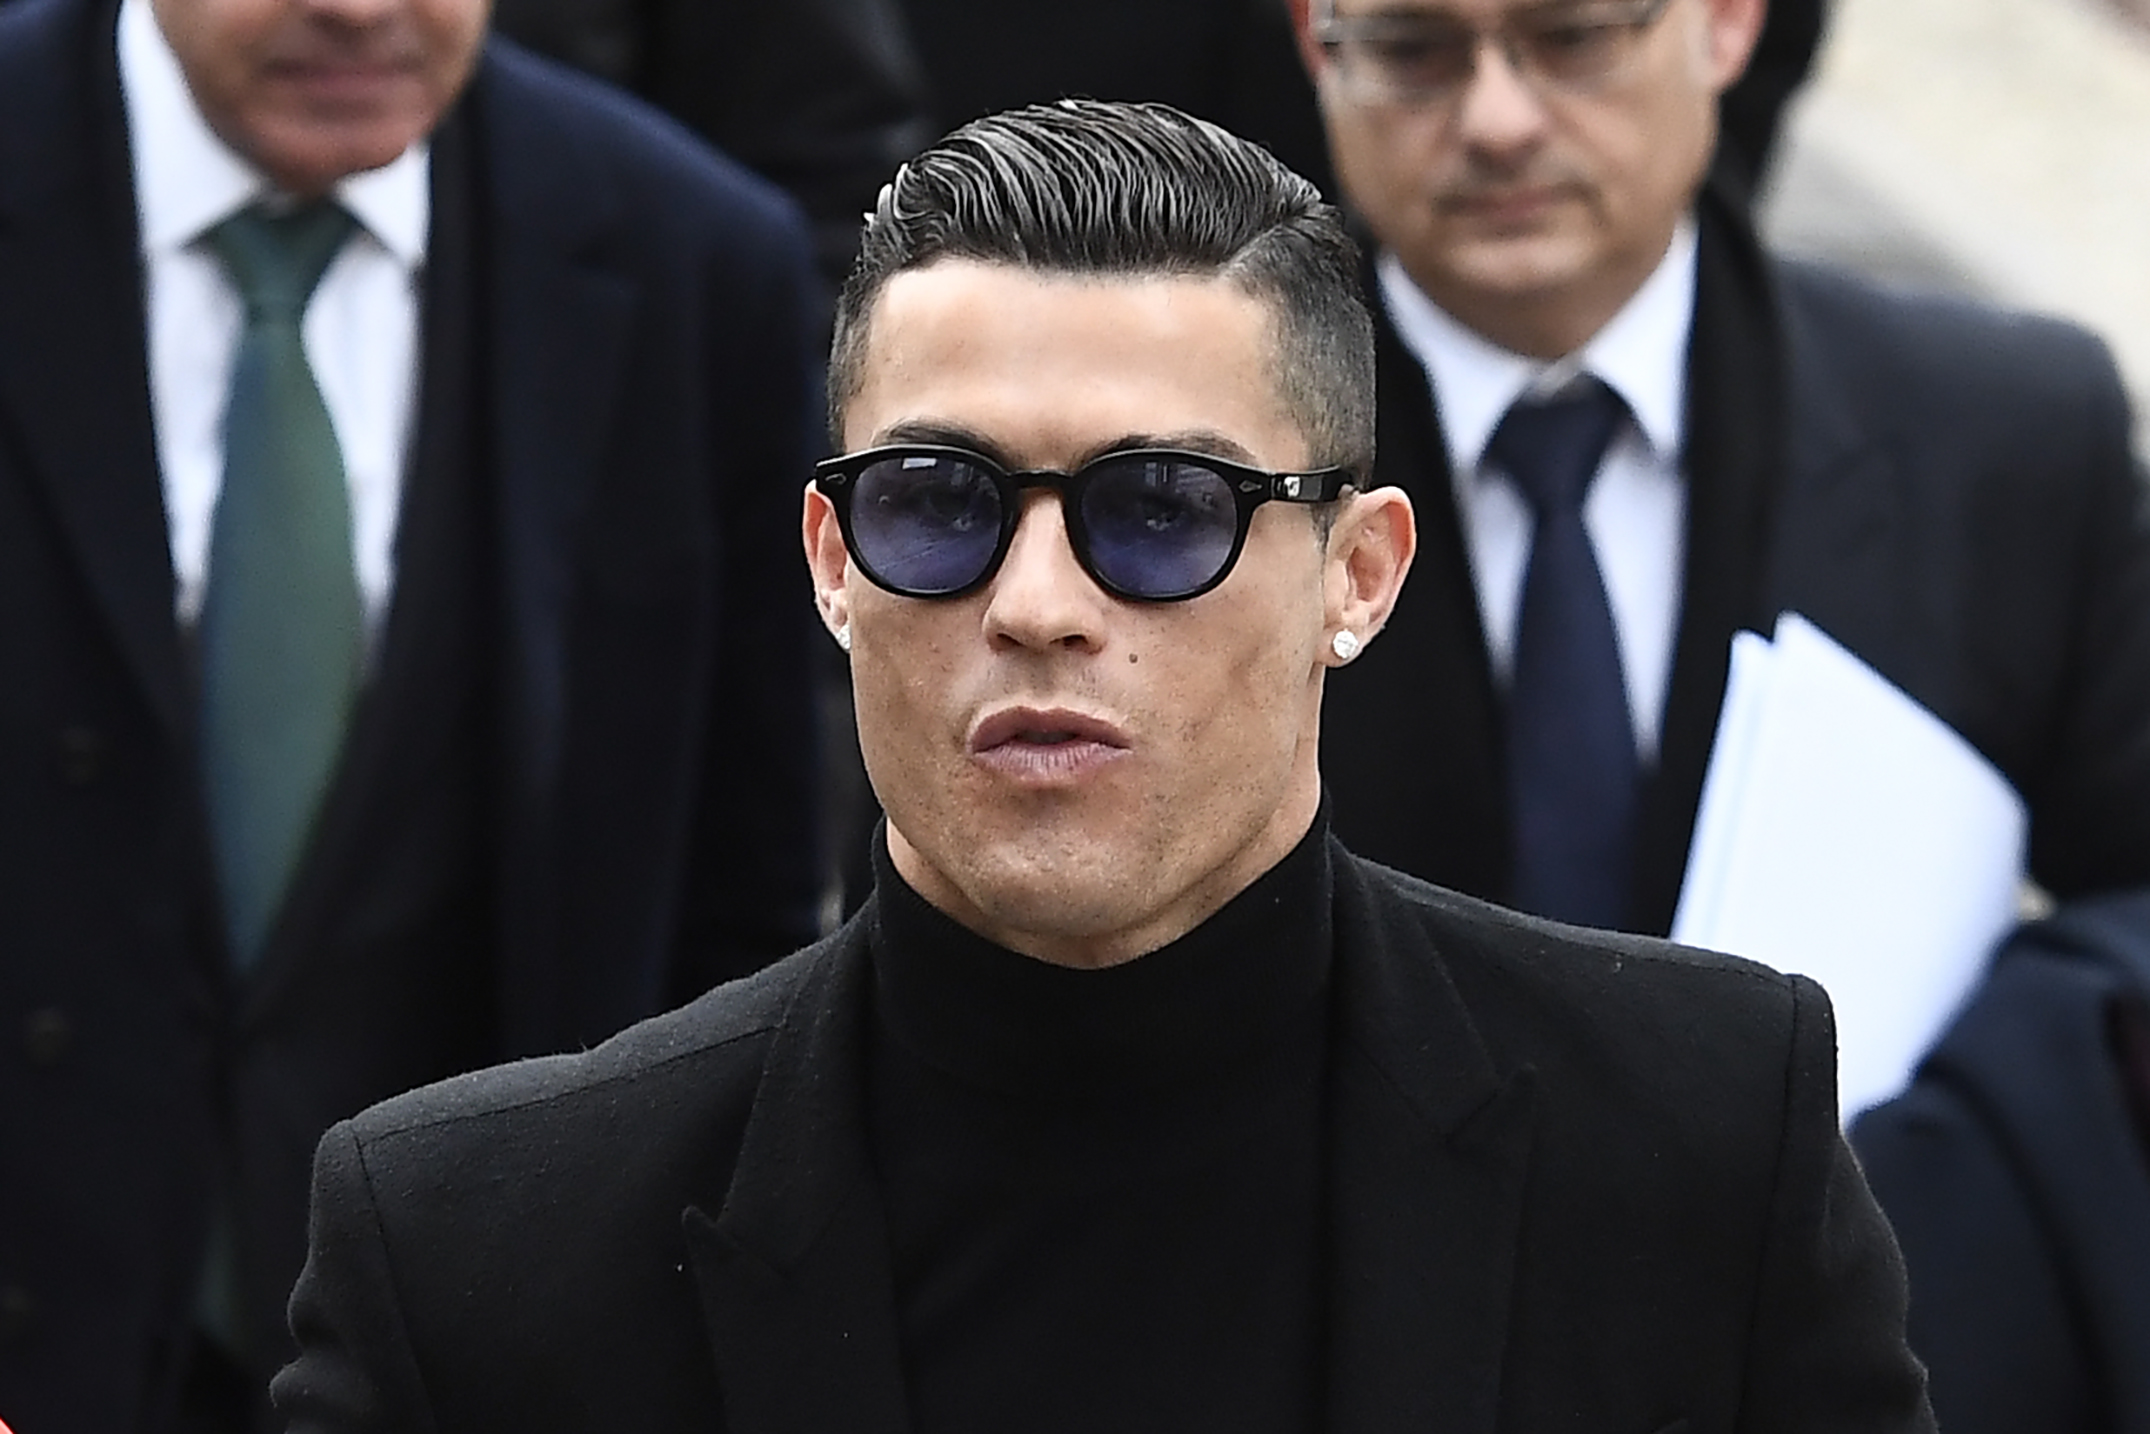 Ronaldo nemierőszak-perének egyik bírája az ügy ejtését javasolja